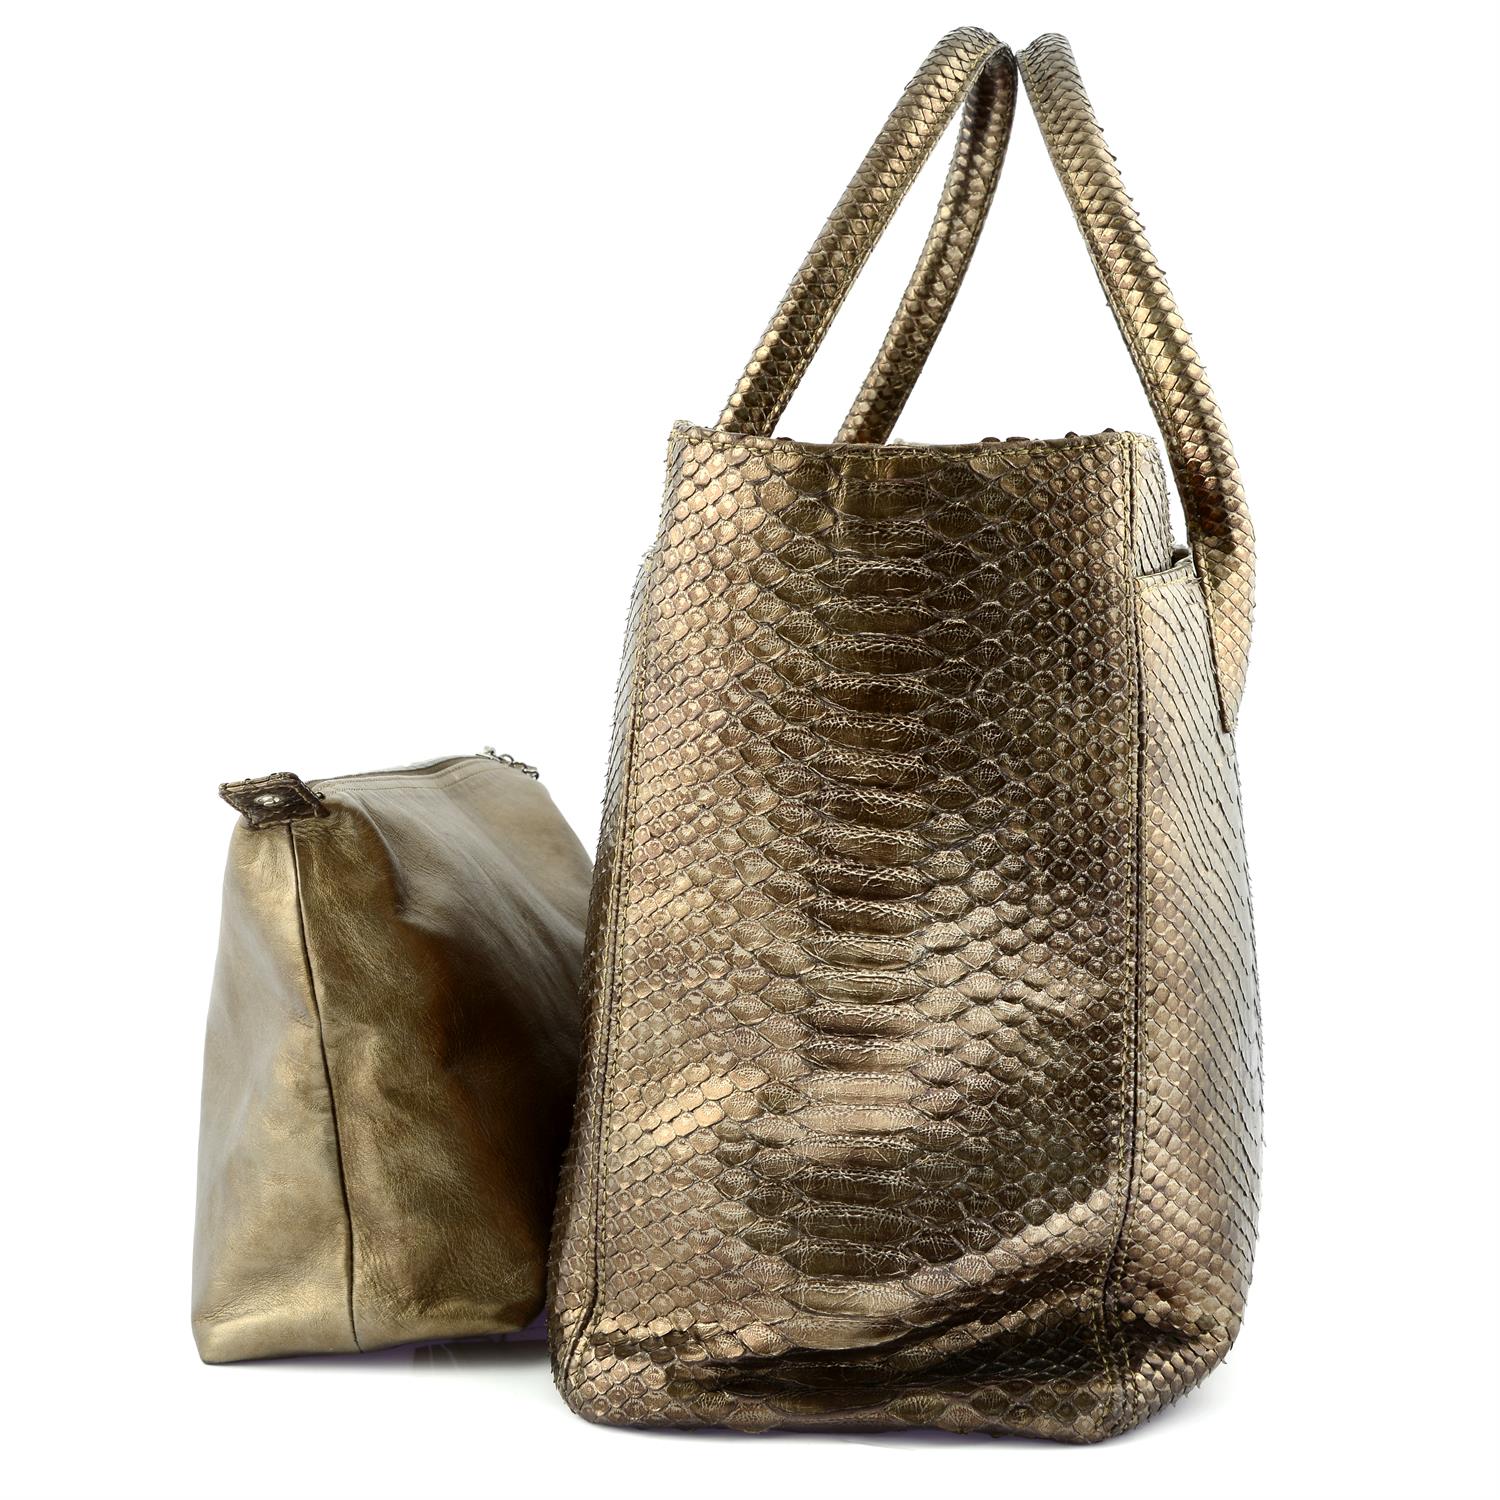 CHANEL - A bronze metallic Python handbag - Image 4 of 5